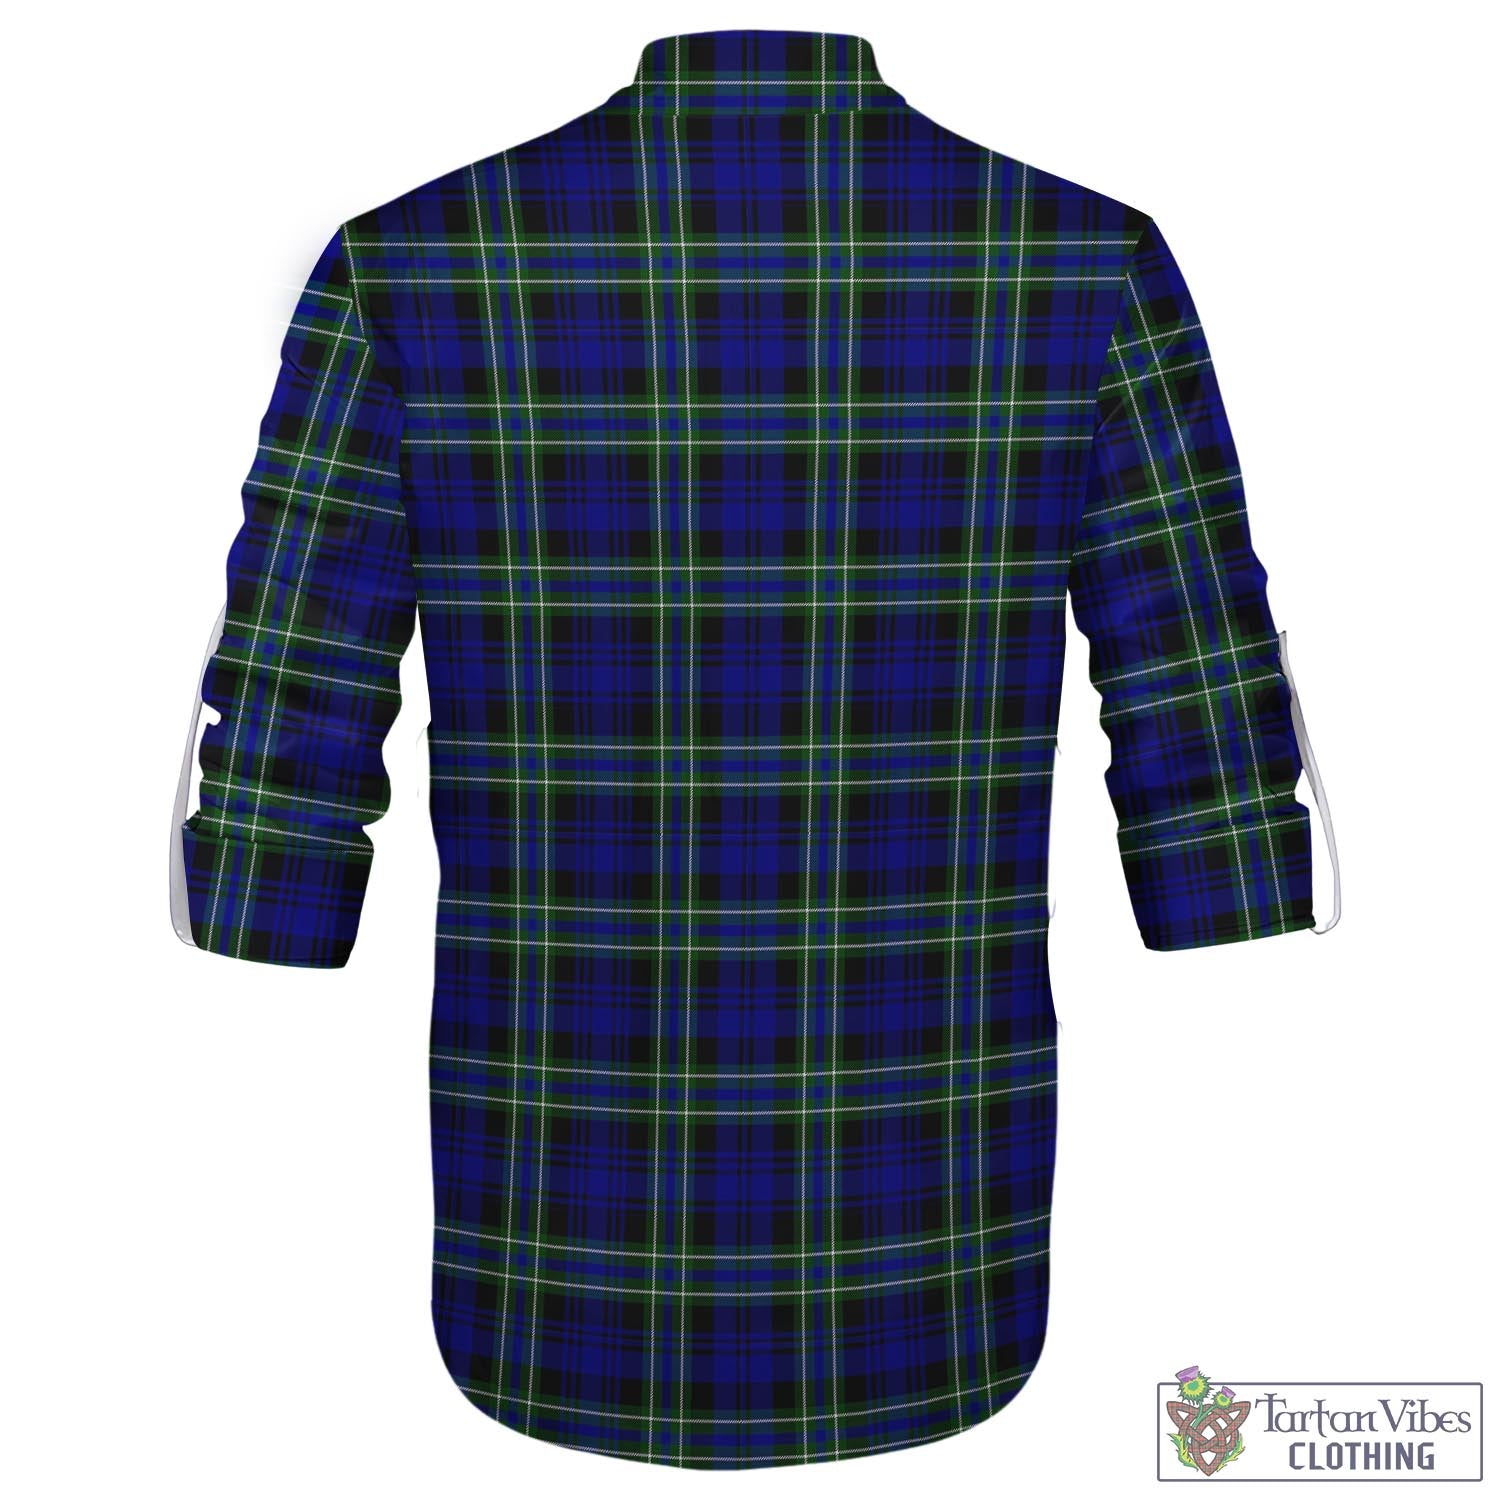 Tartan Vibes Clothing Arbuthnot Modern Tartan Men's Scottish Traditional Jacobite Ghillie Kilt Shirt